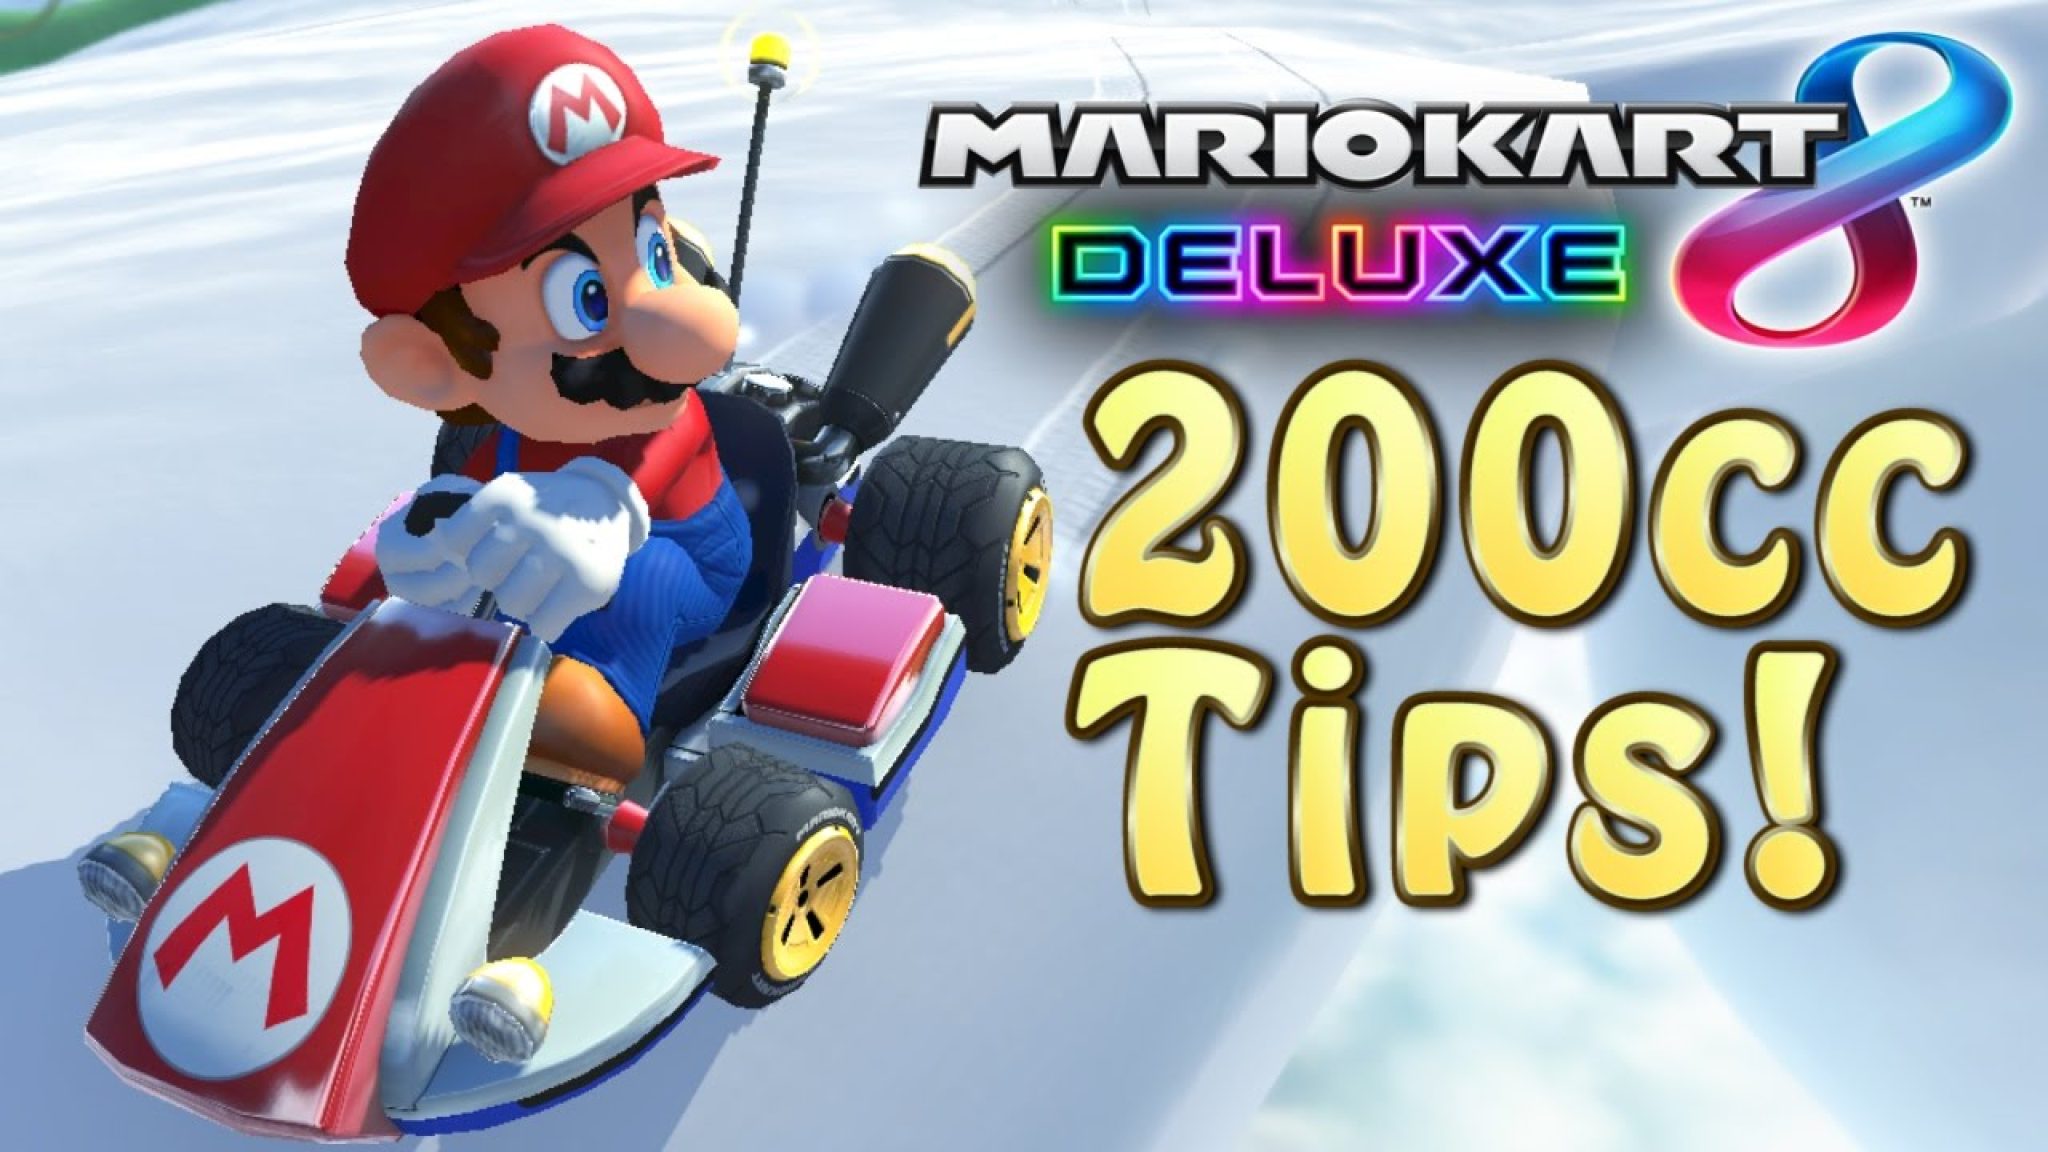 Best Mario Kart 8 Setup for 200cc? How to Nintendo